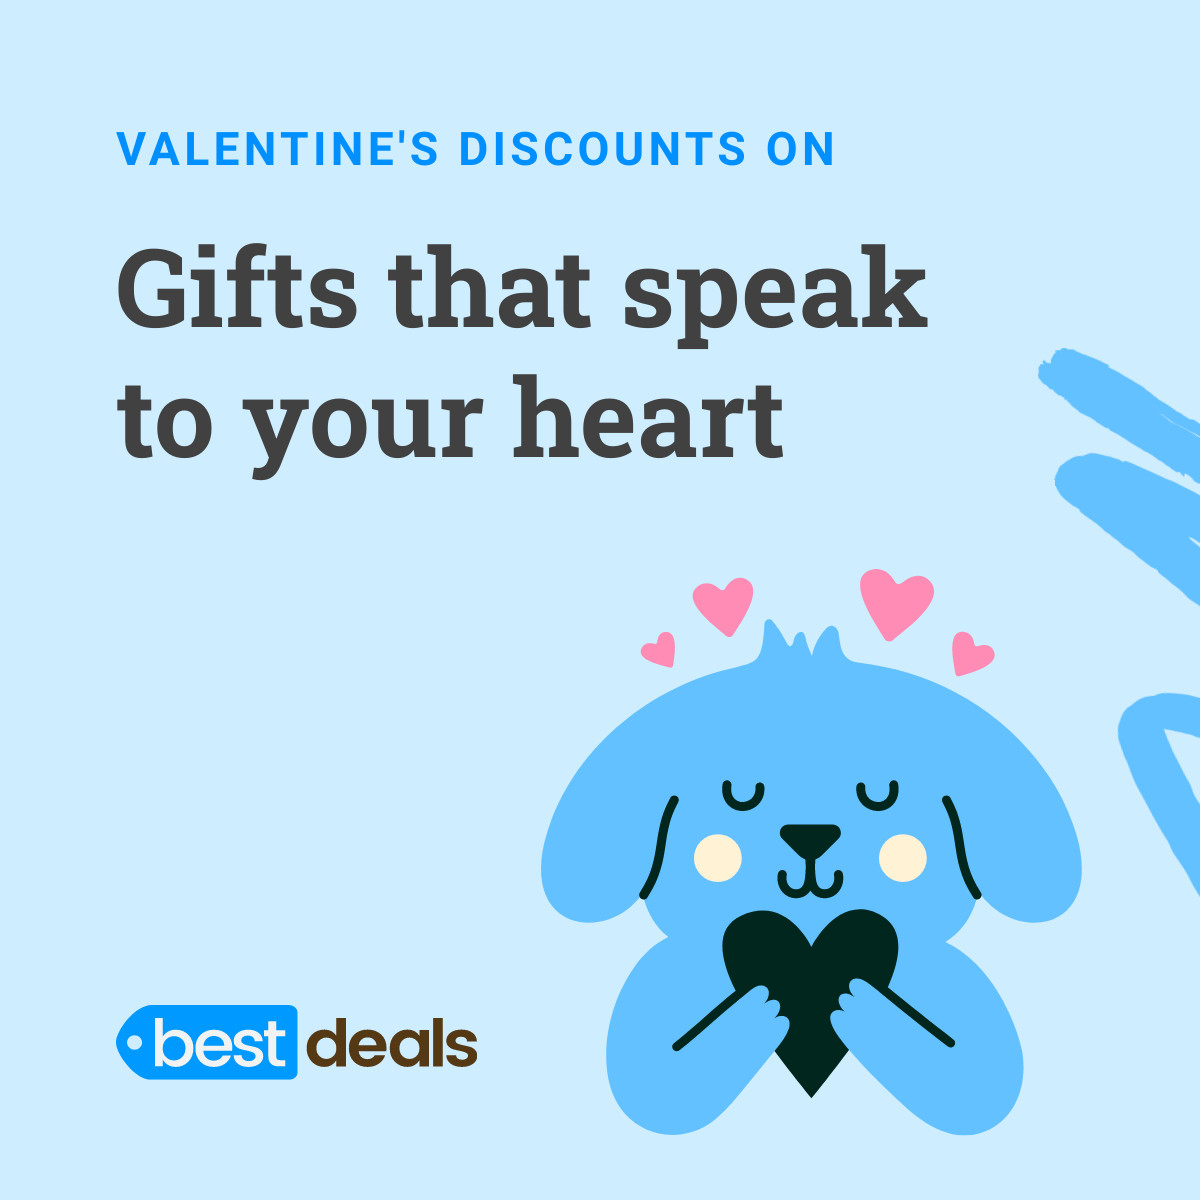 Blue Valentine's Day Gifts that Speak